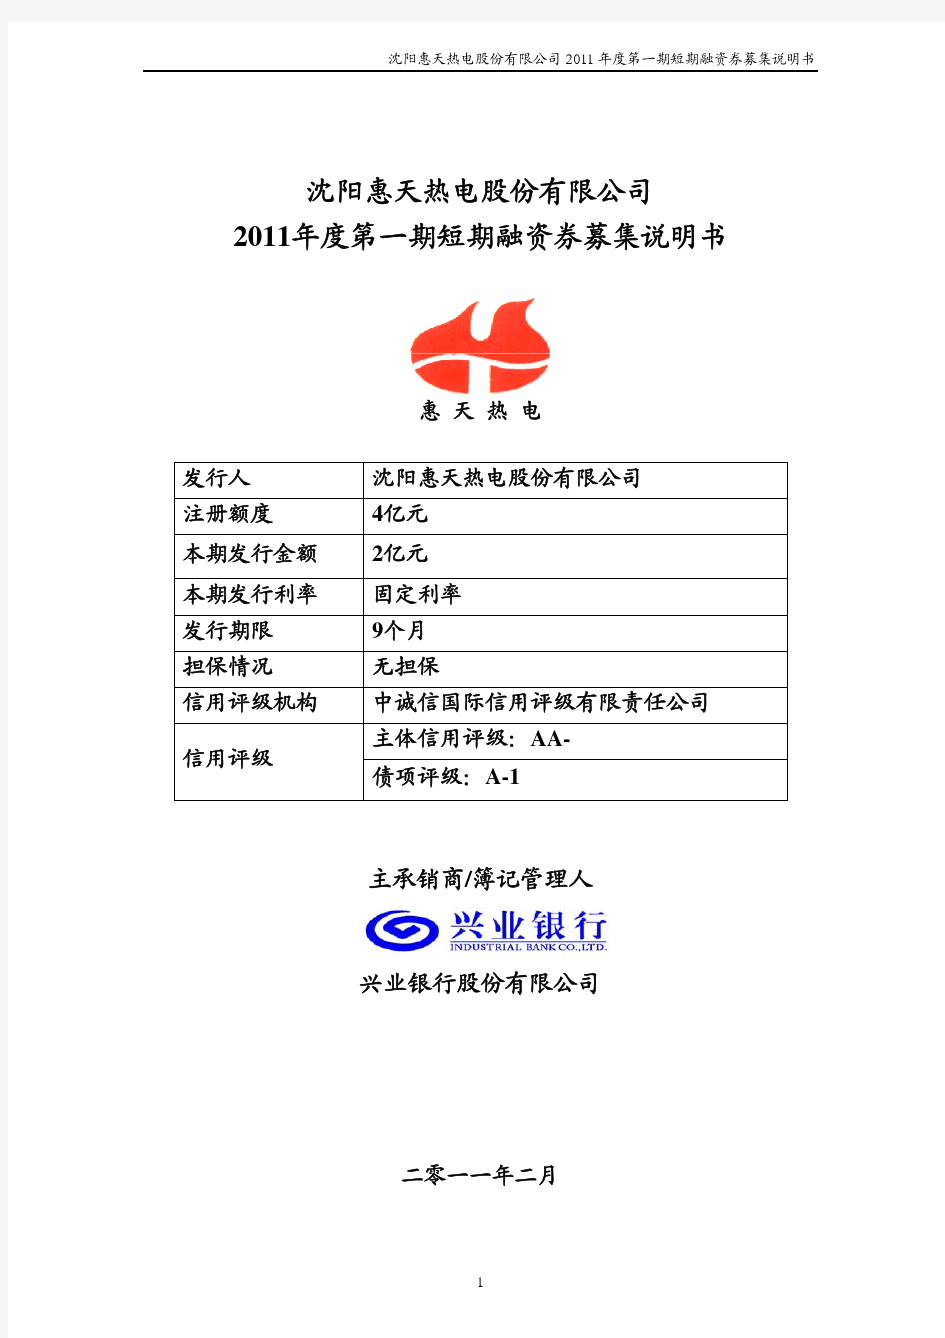 沈阳惠天热电股份有限公司2011年度第一期短期融资券募集说明书